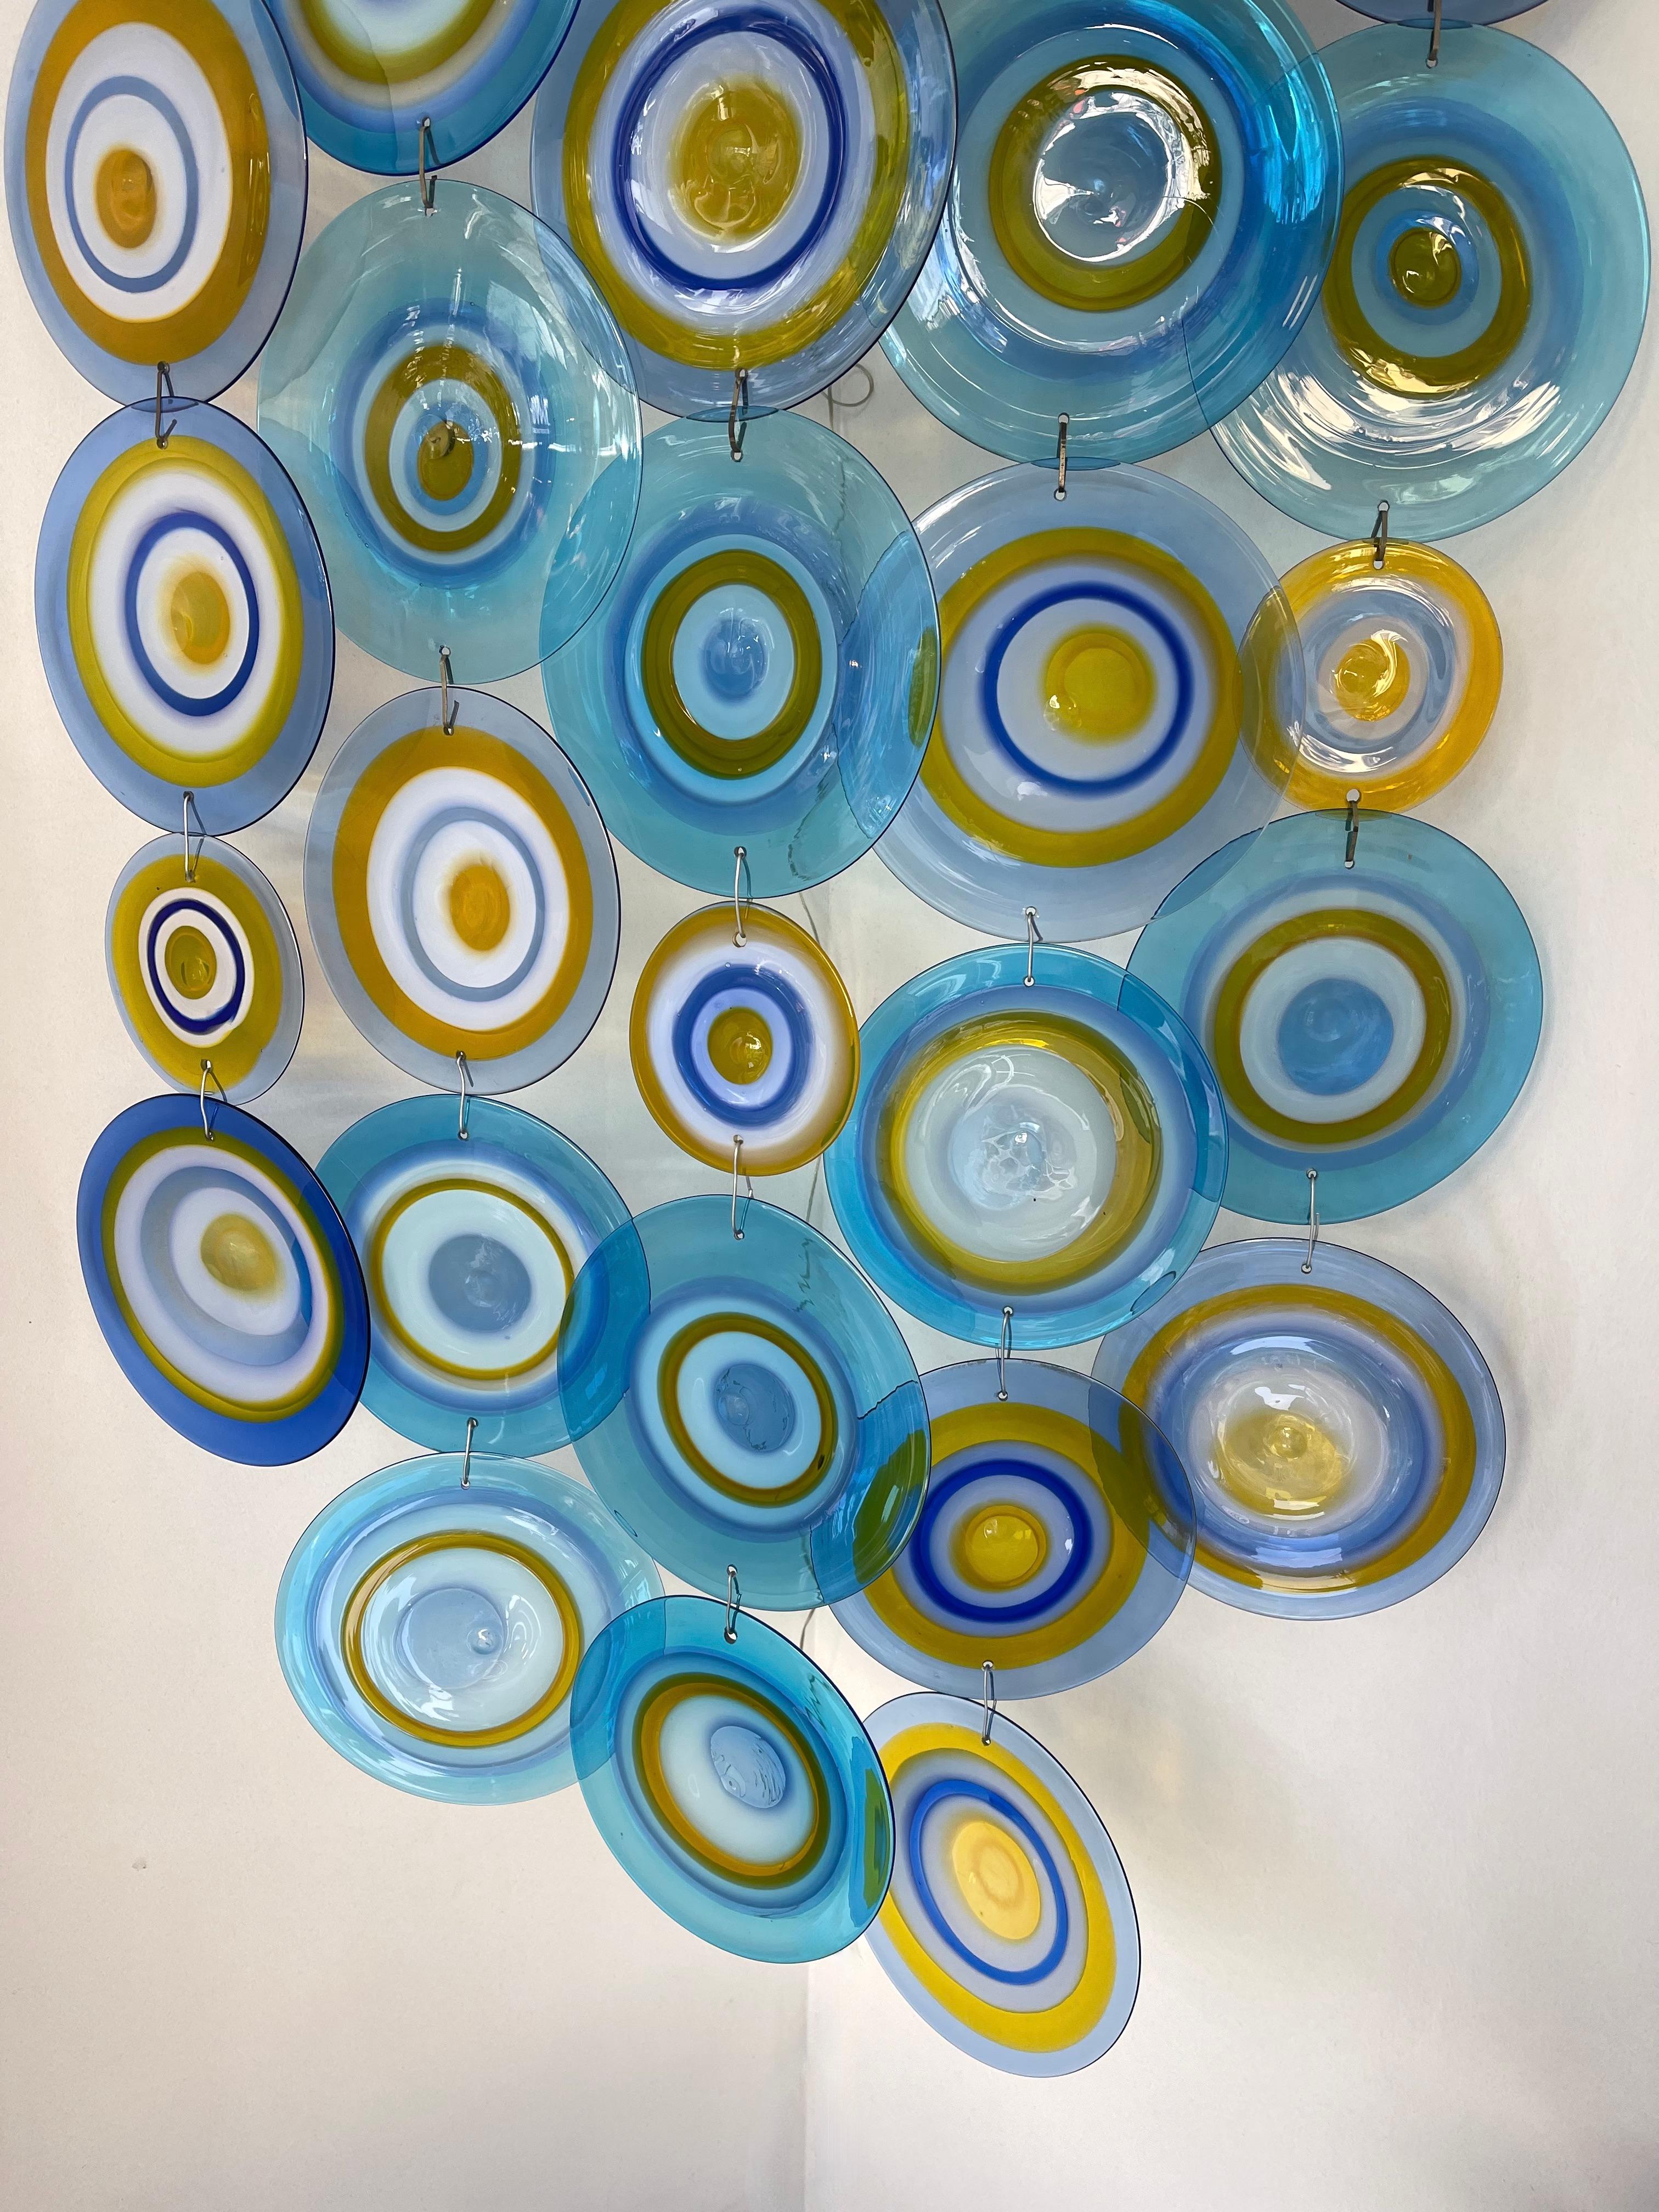 Sehr seltene überdimensionale, extra lange Eck-Wandleuchte aus blauem, gelbem und weißem Muranoglas von der italienischen Meisterkünstlerin Gianmaria Potenza für die Murano-Manufaktur La murrina. Dieses Stück ist so konzipiert, dass es in einer